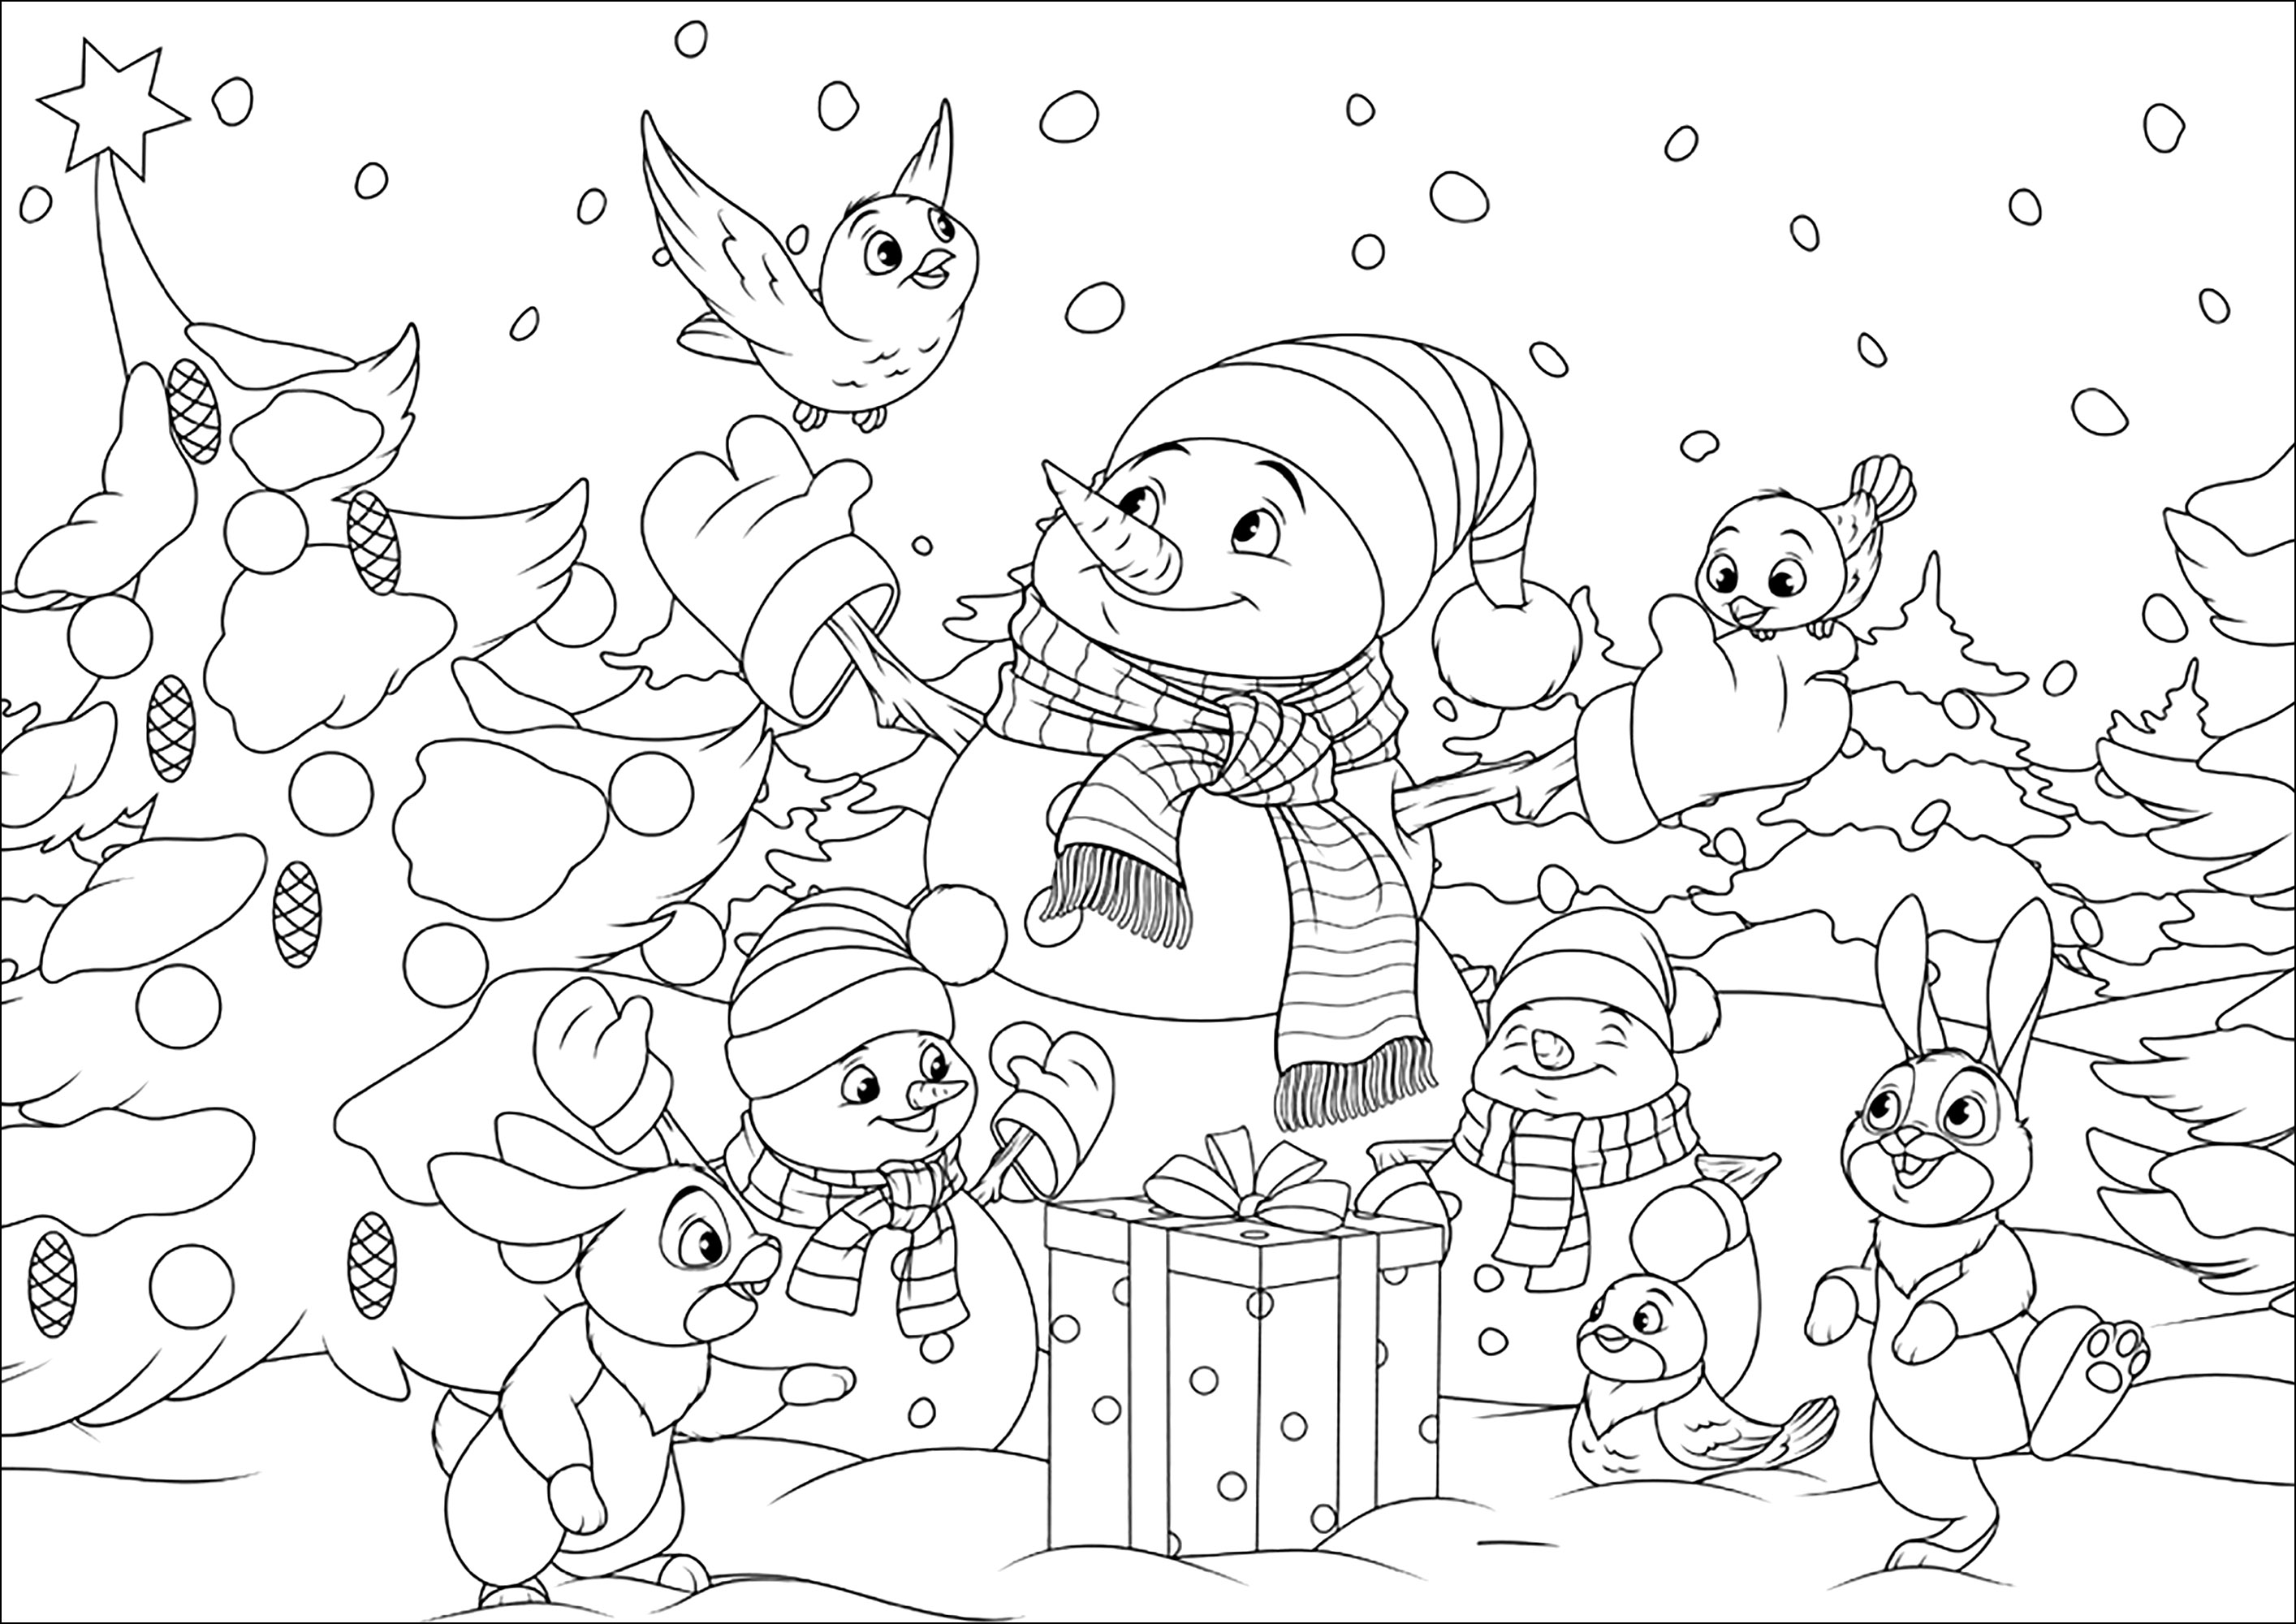 I pupazzi di neve e i loro amici del bosco. Colorate questi graziosi pupazzi di neve e i loro amici coniglietti e uccellini in un paesaggio natalizio innevato, Fonte : 123rf   Artista : Andrey1978